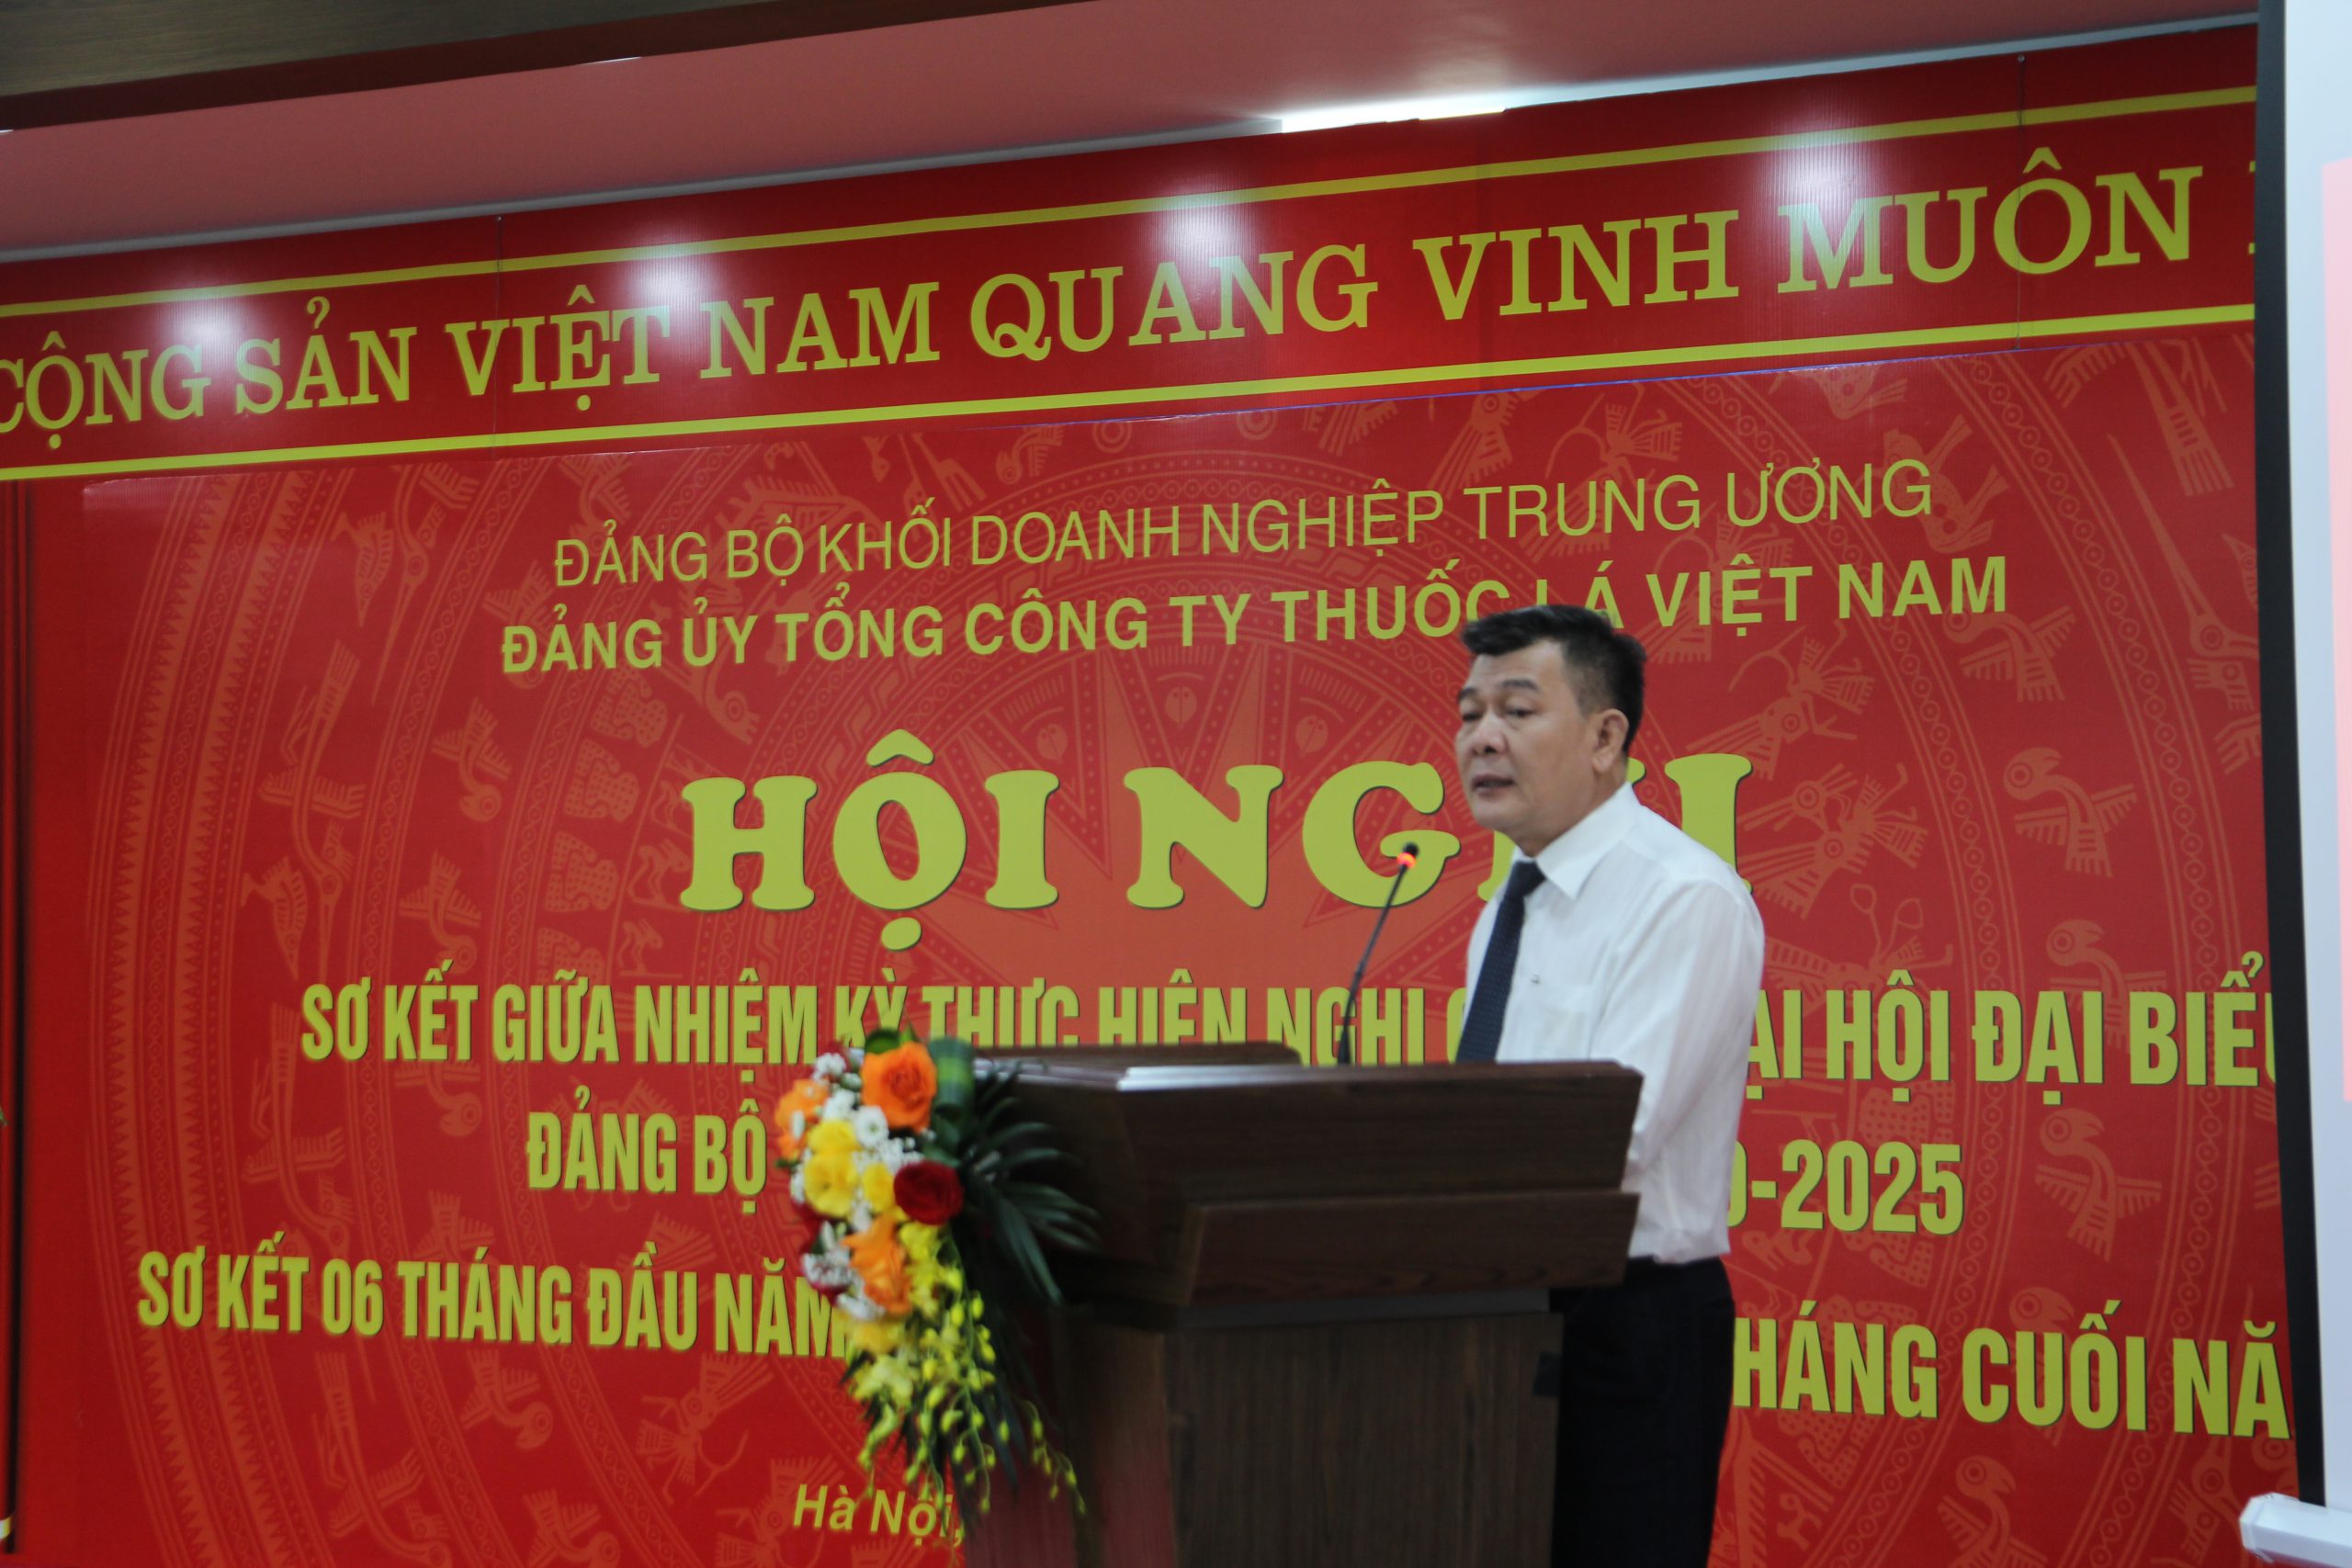 Nguyễn Đức Phong – Phó Bí thư Thường trực Đảng ủy Khối Doanh nghiệp Trung ương có những phát biểu đánh giá cao tại Hội nghị.